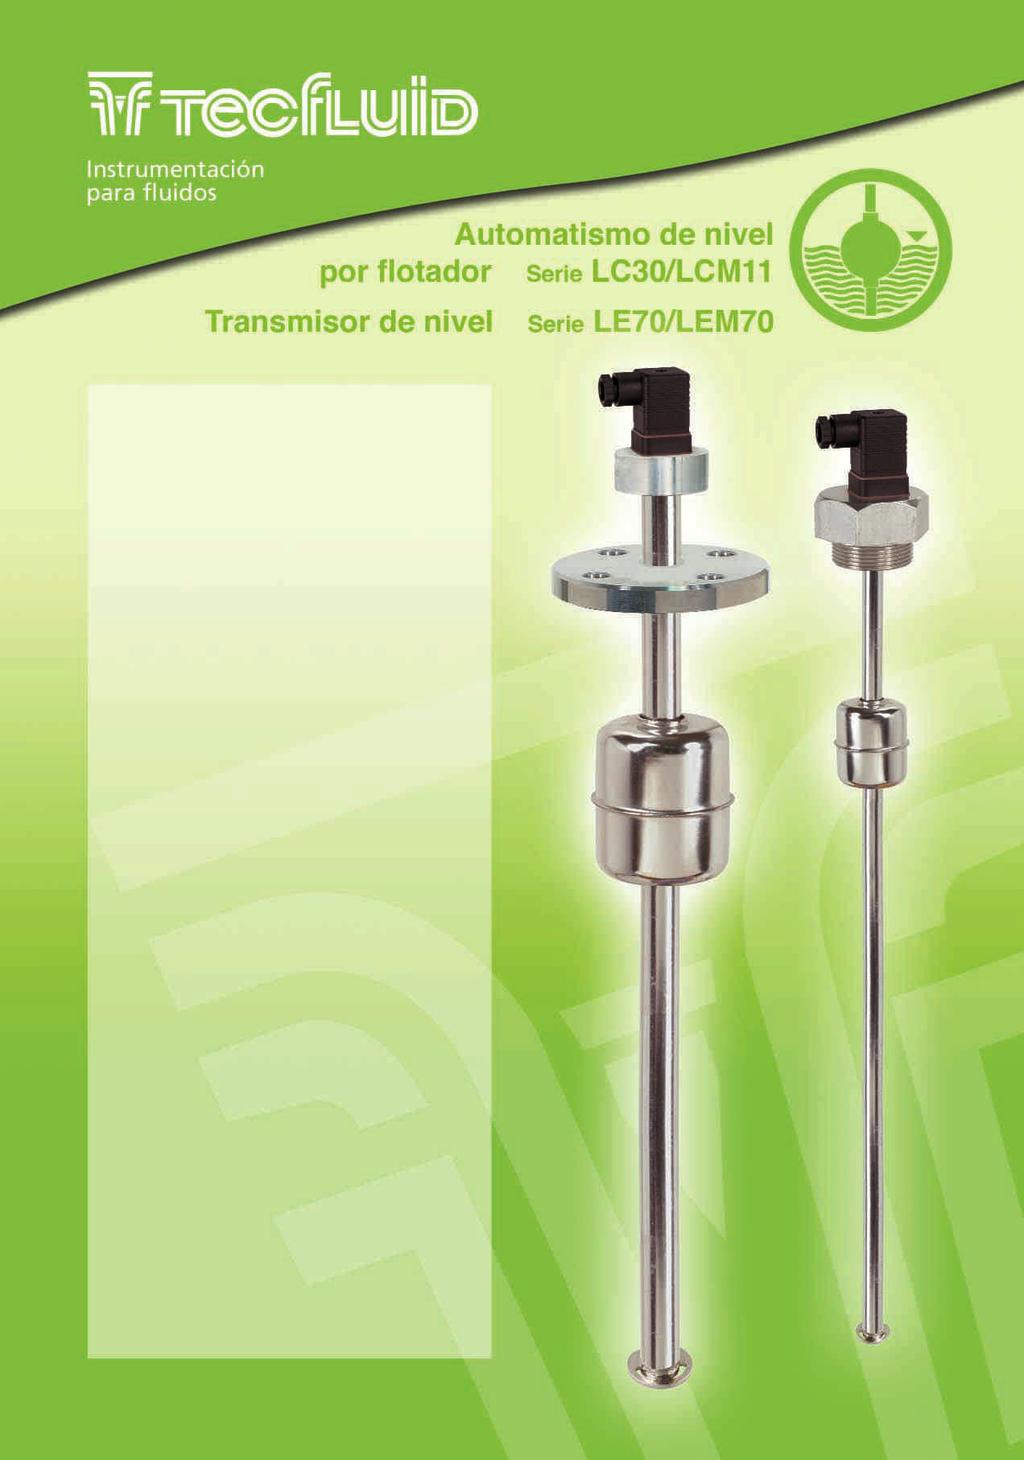 La Serie LC30/LCM11 es un automatismo de nivel para líquidos, accionado por el campo magnético del flotador La Serie LE70/LEM70 es un transmisor de nivel, con salida eléctrica 0.